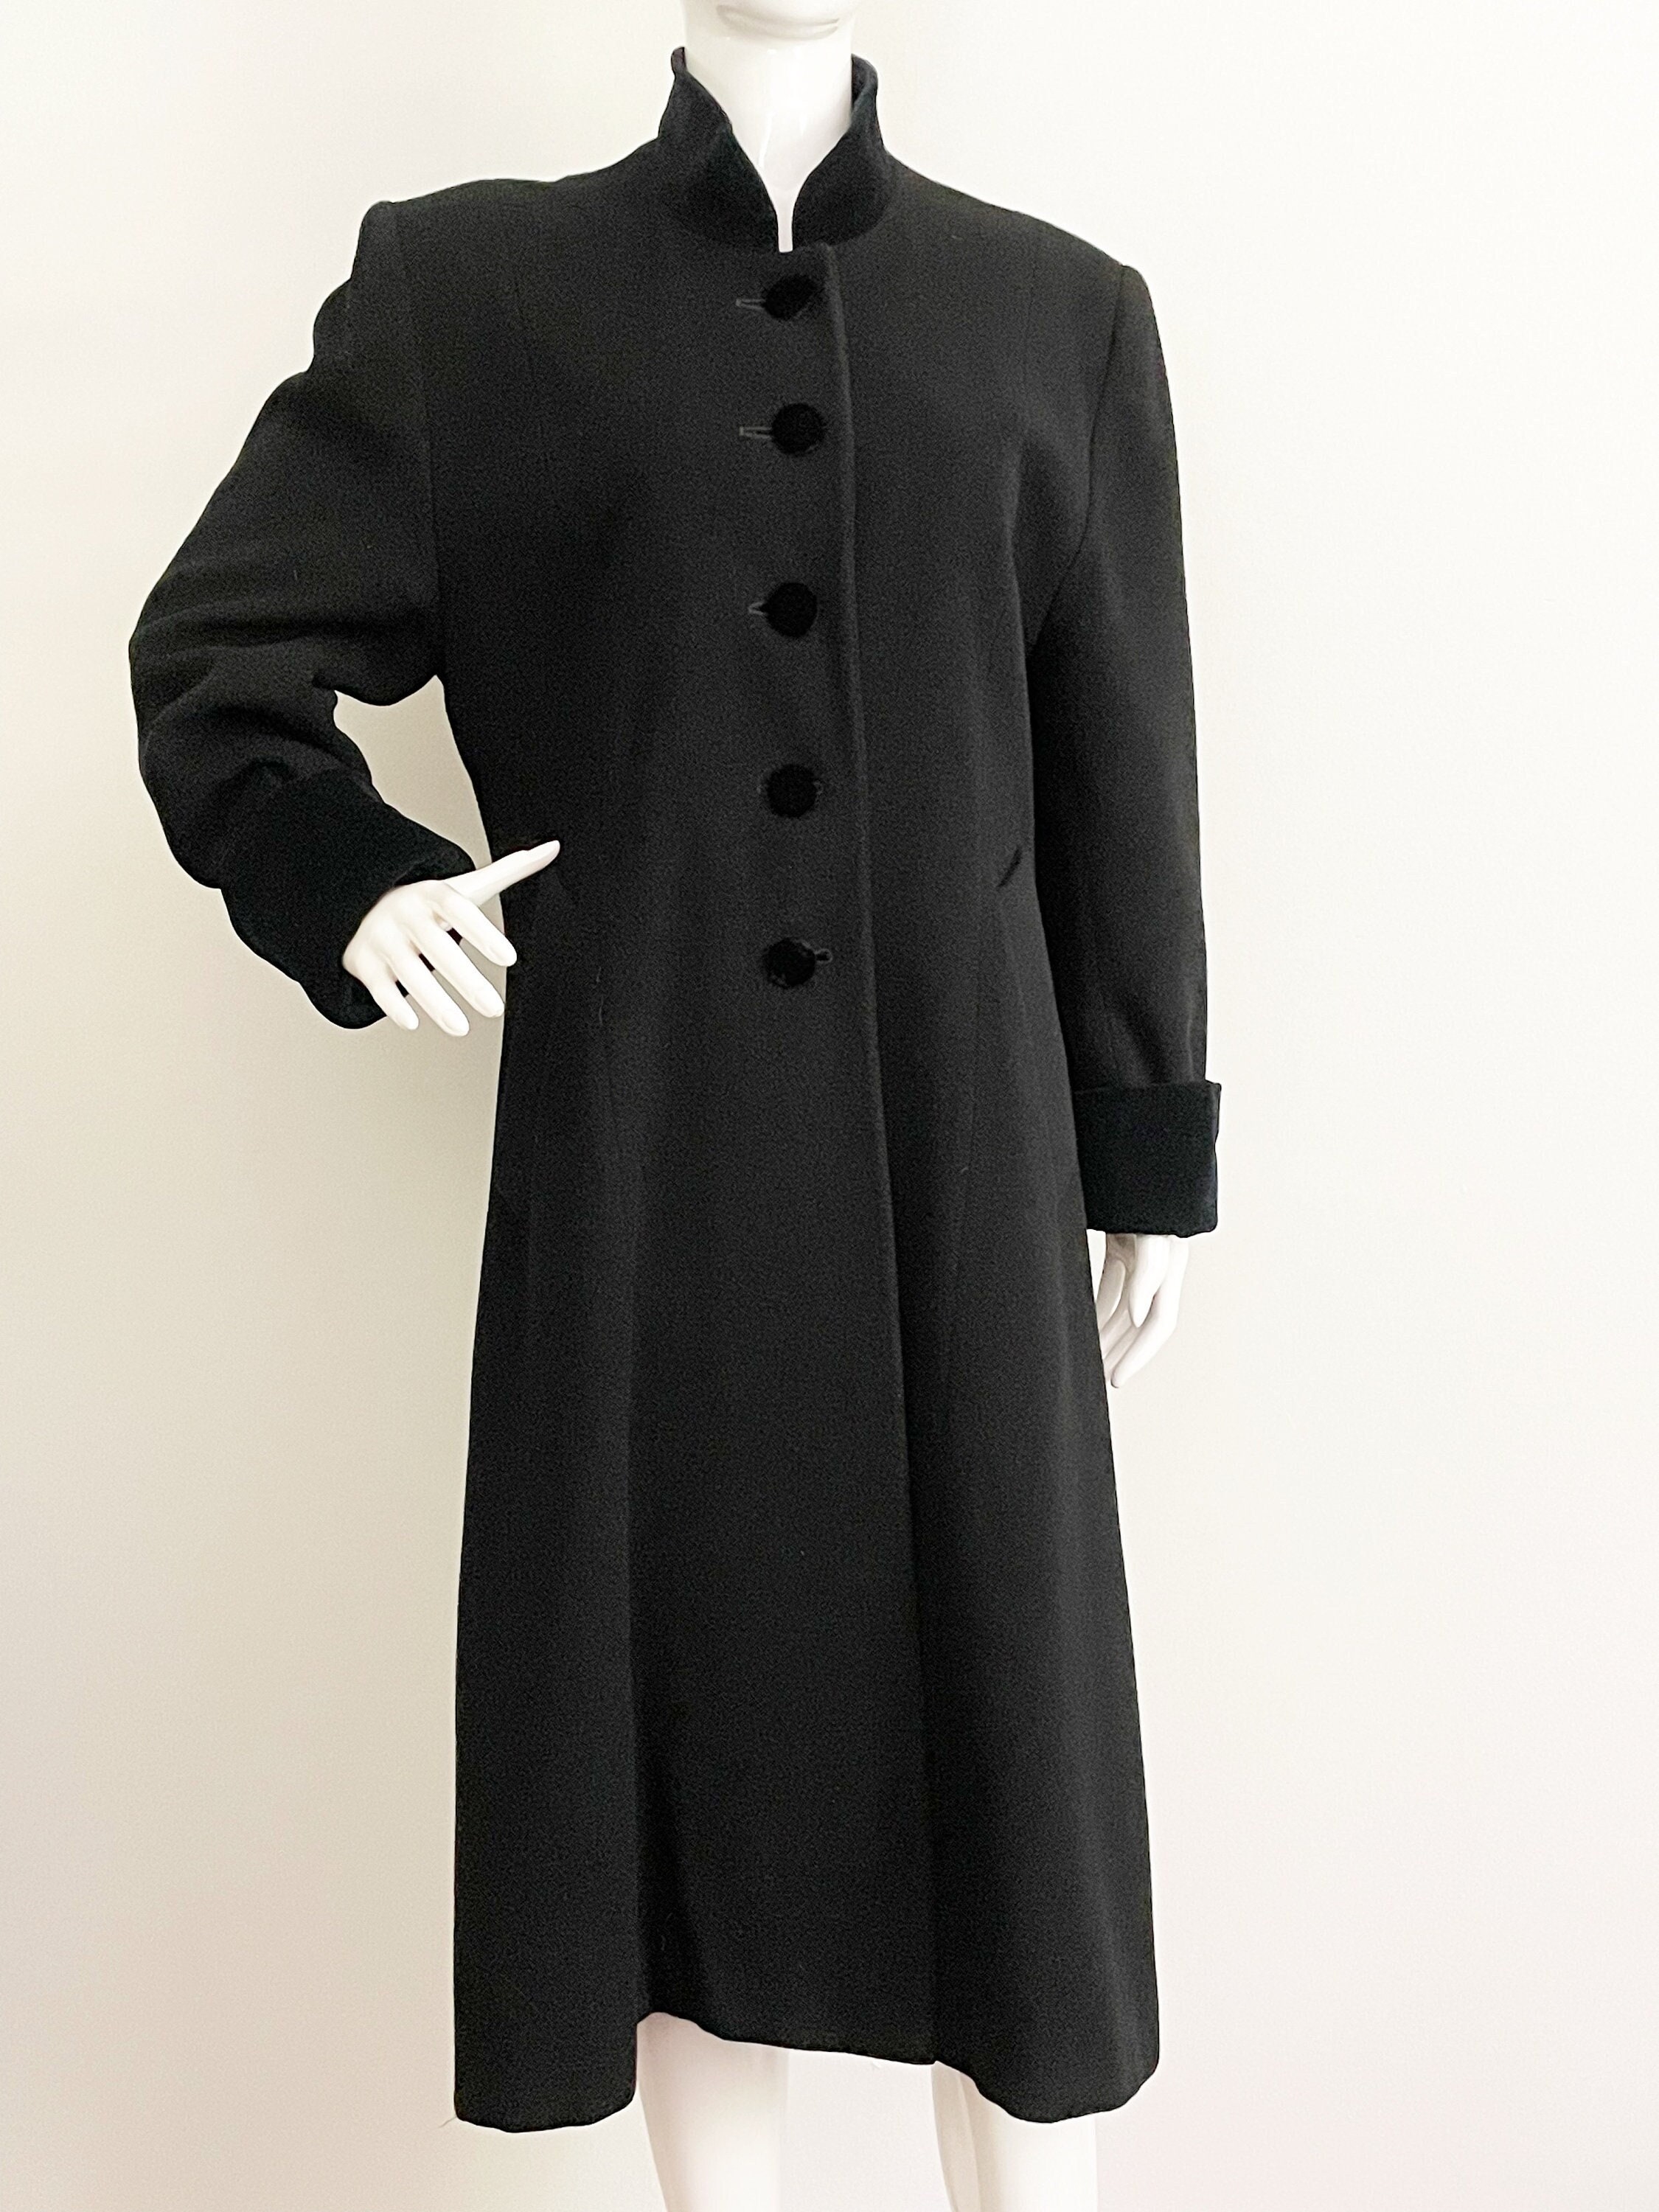 Christian Dior Wool Coat, Velvet Trimmed Coat, Black Winter Coat ...